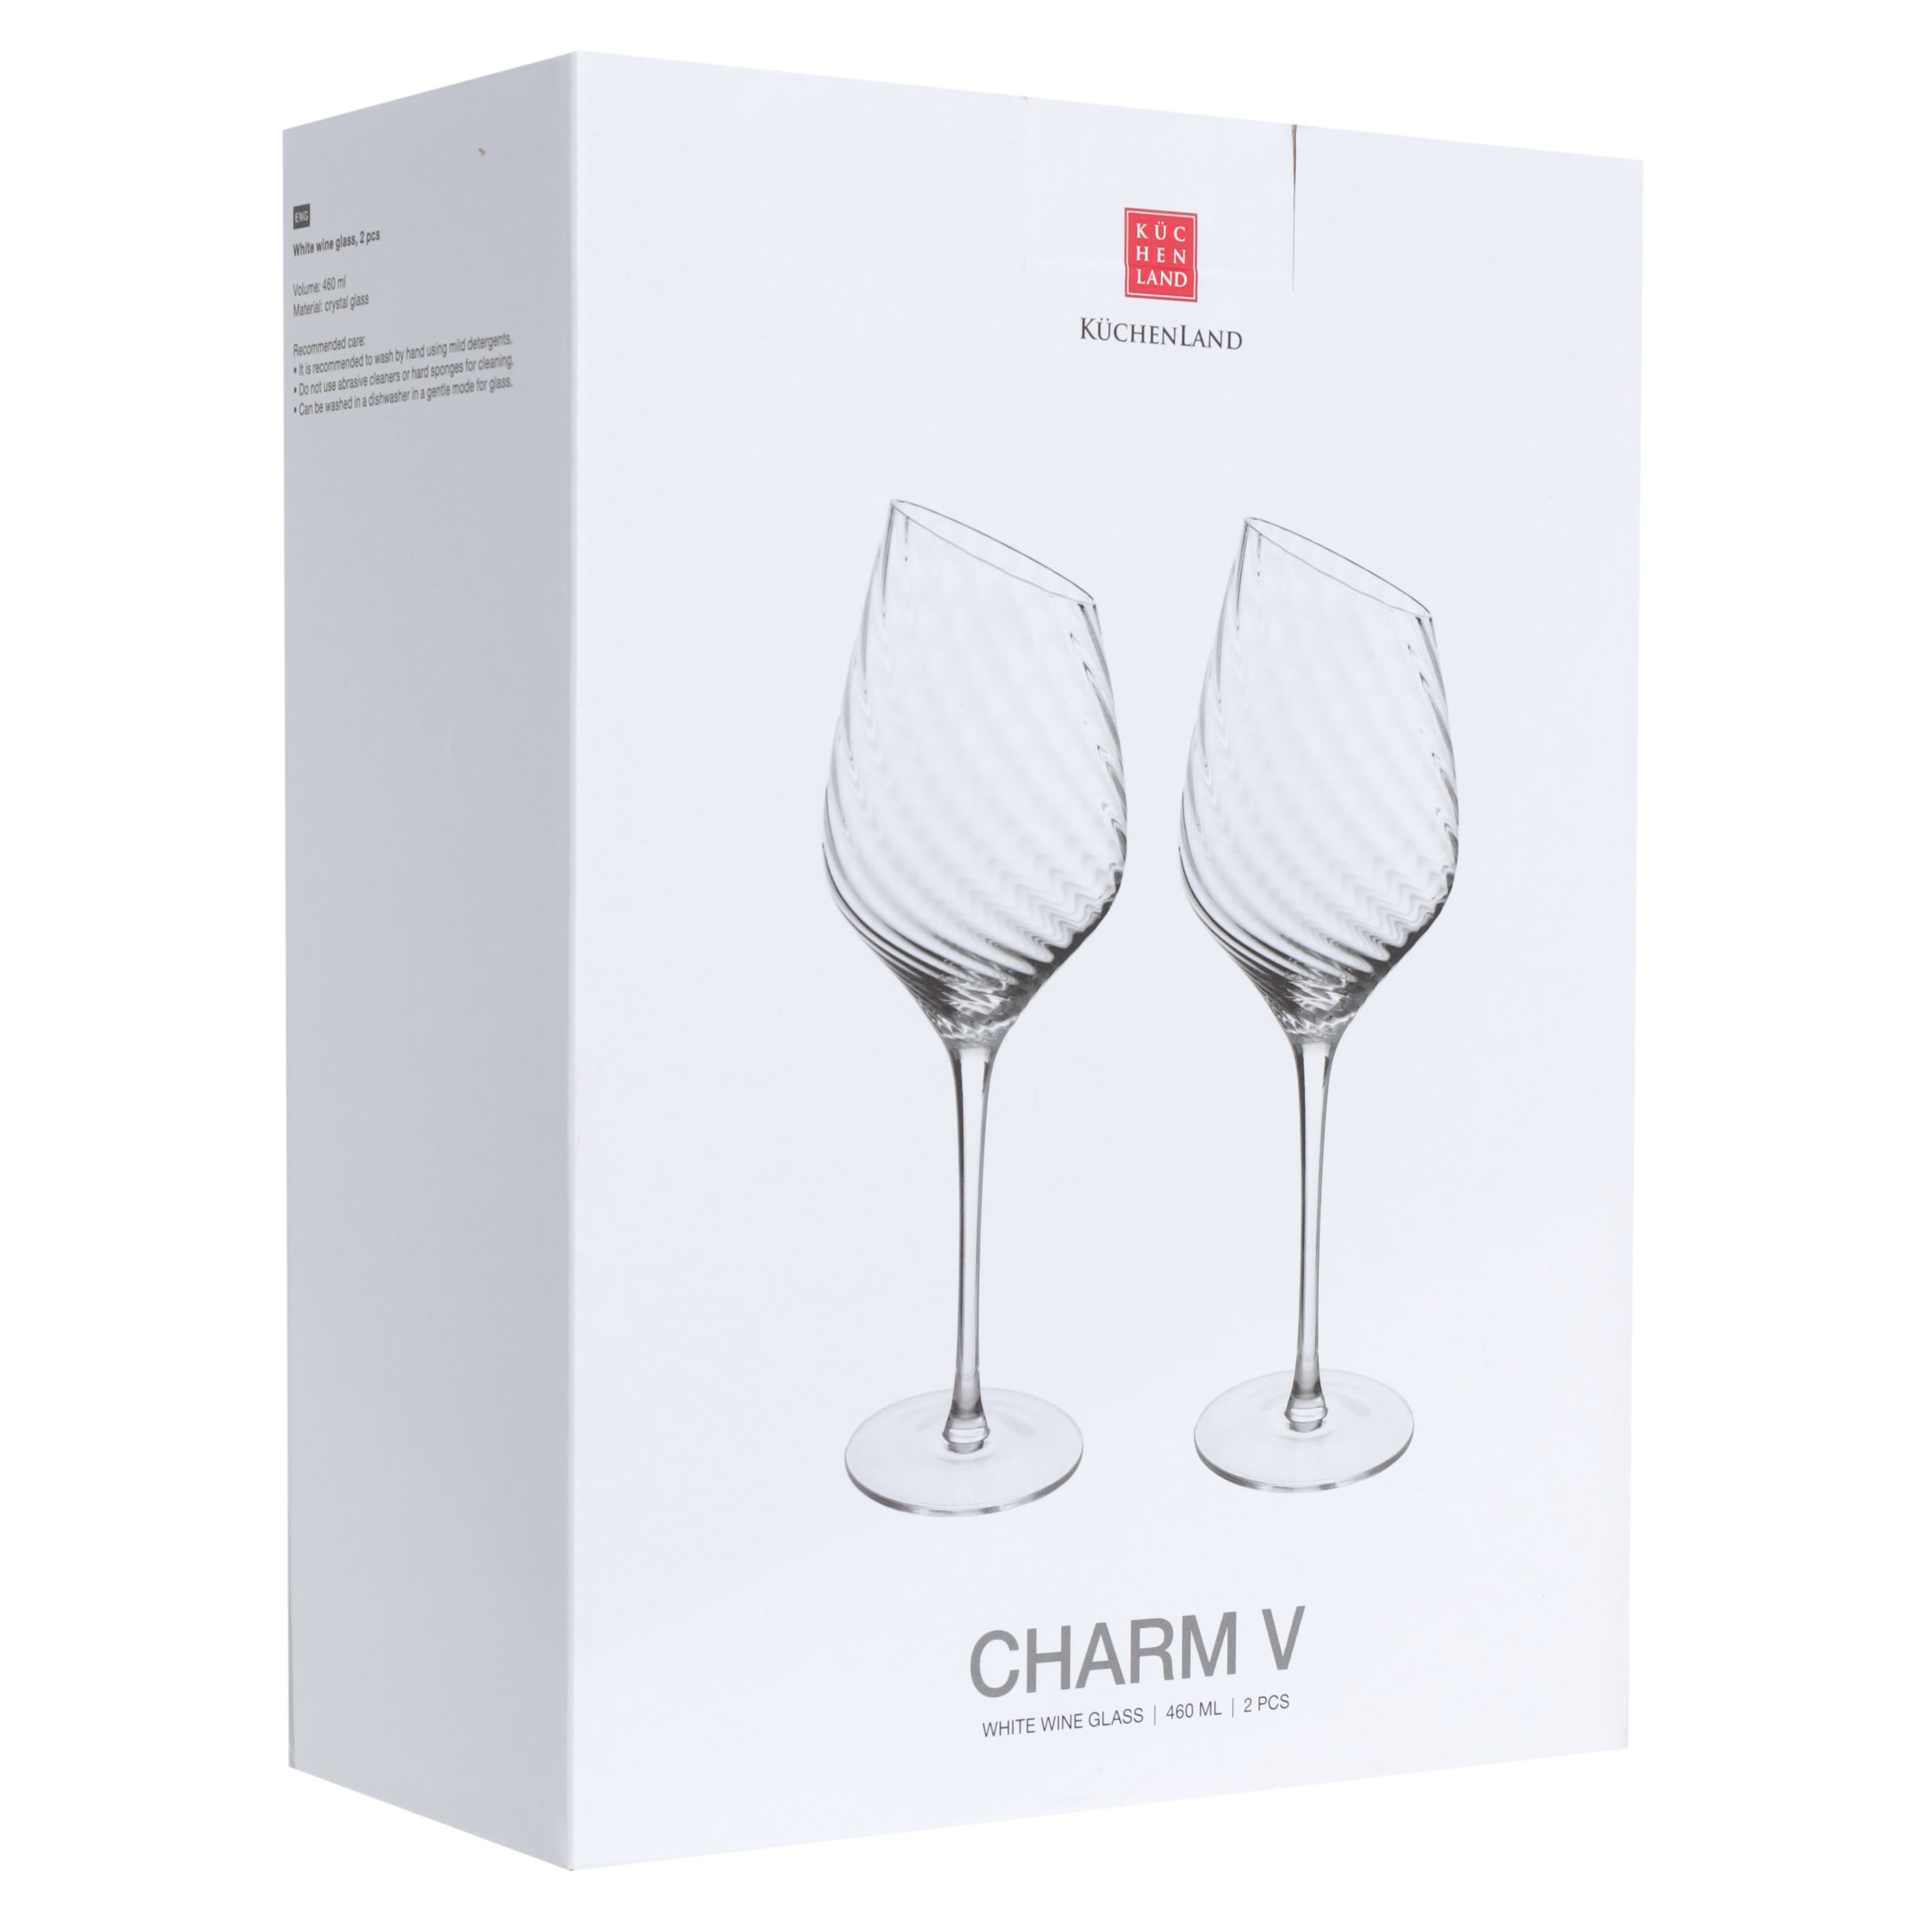 White wine glass, 460 ml, 2 pcs, glass, Charm V изображение № 2